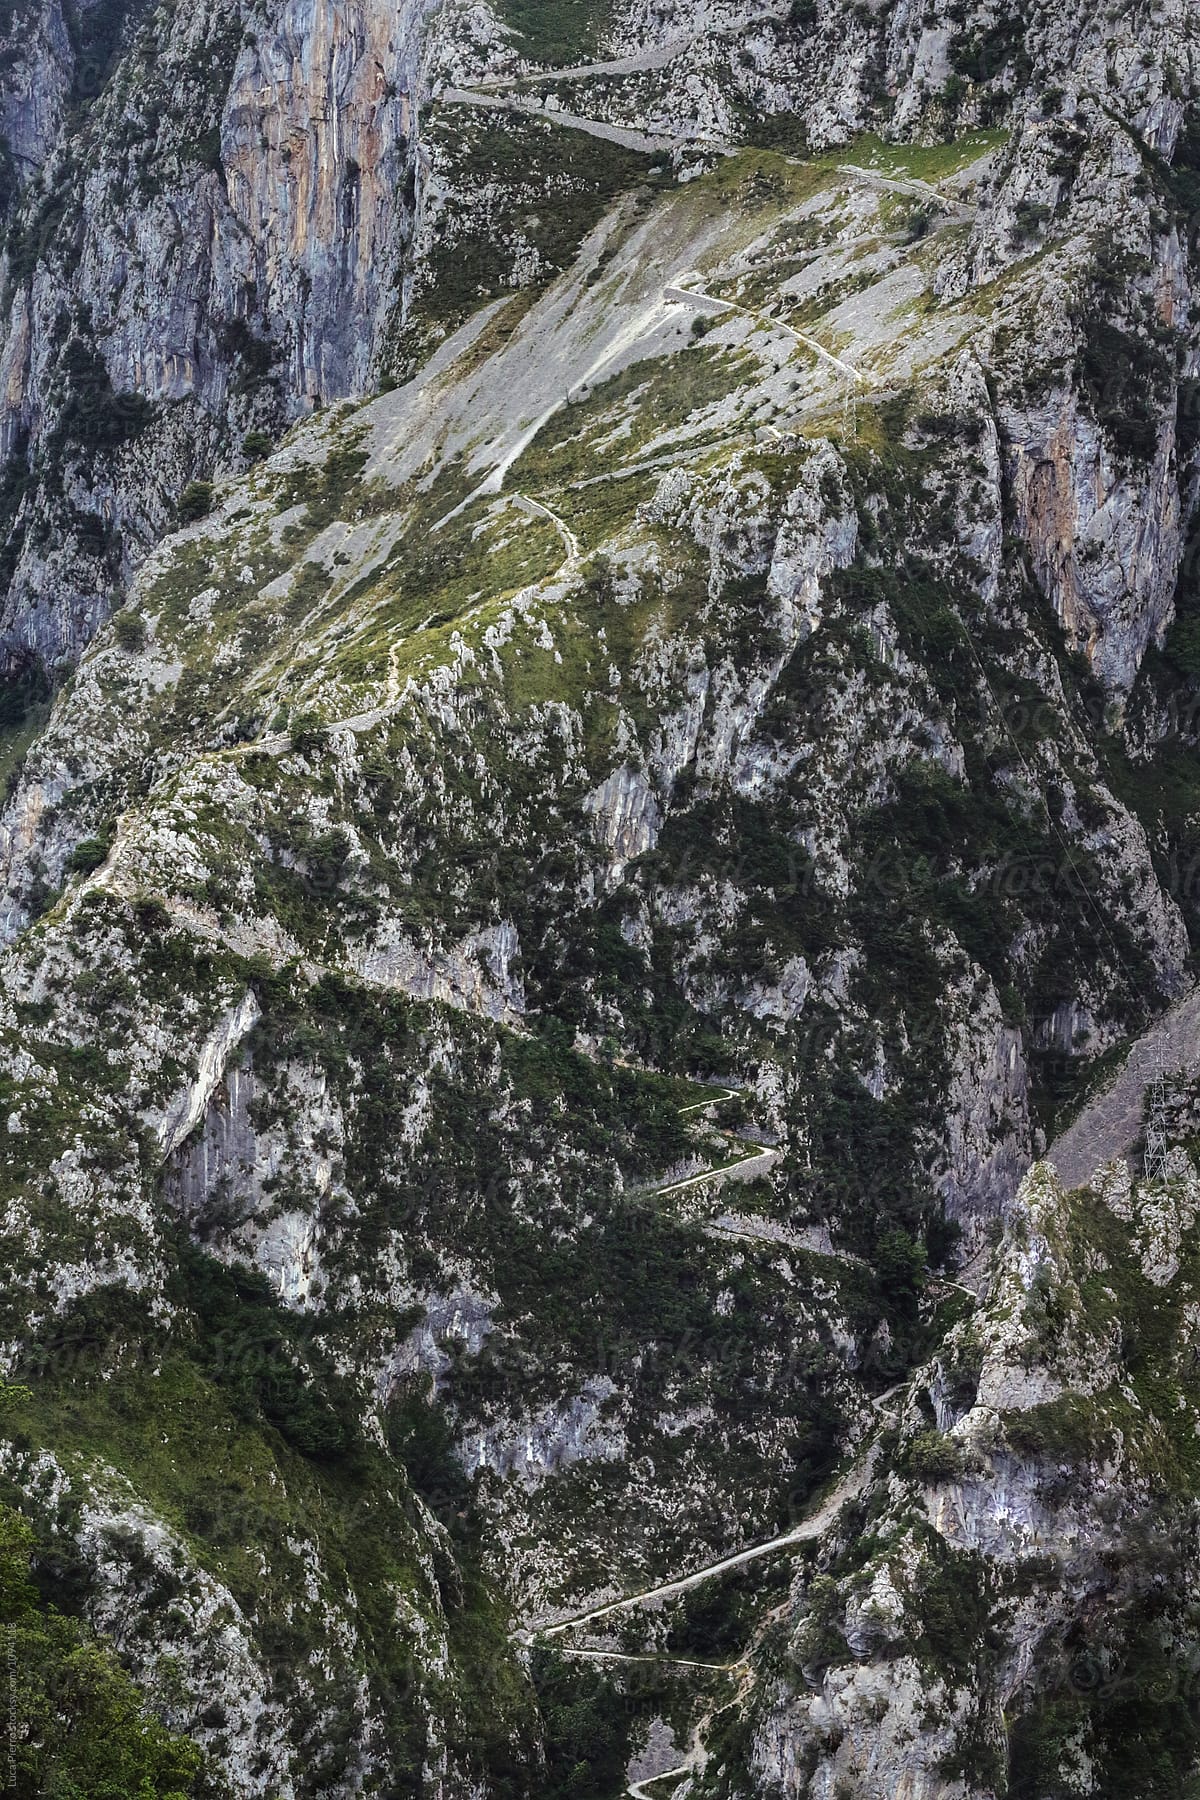 Senda de La Peña (Tresviso\'s Trail), Cantabria, Spain